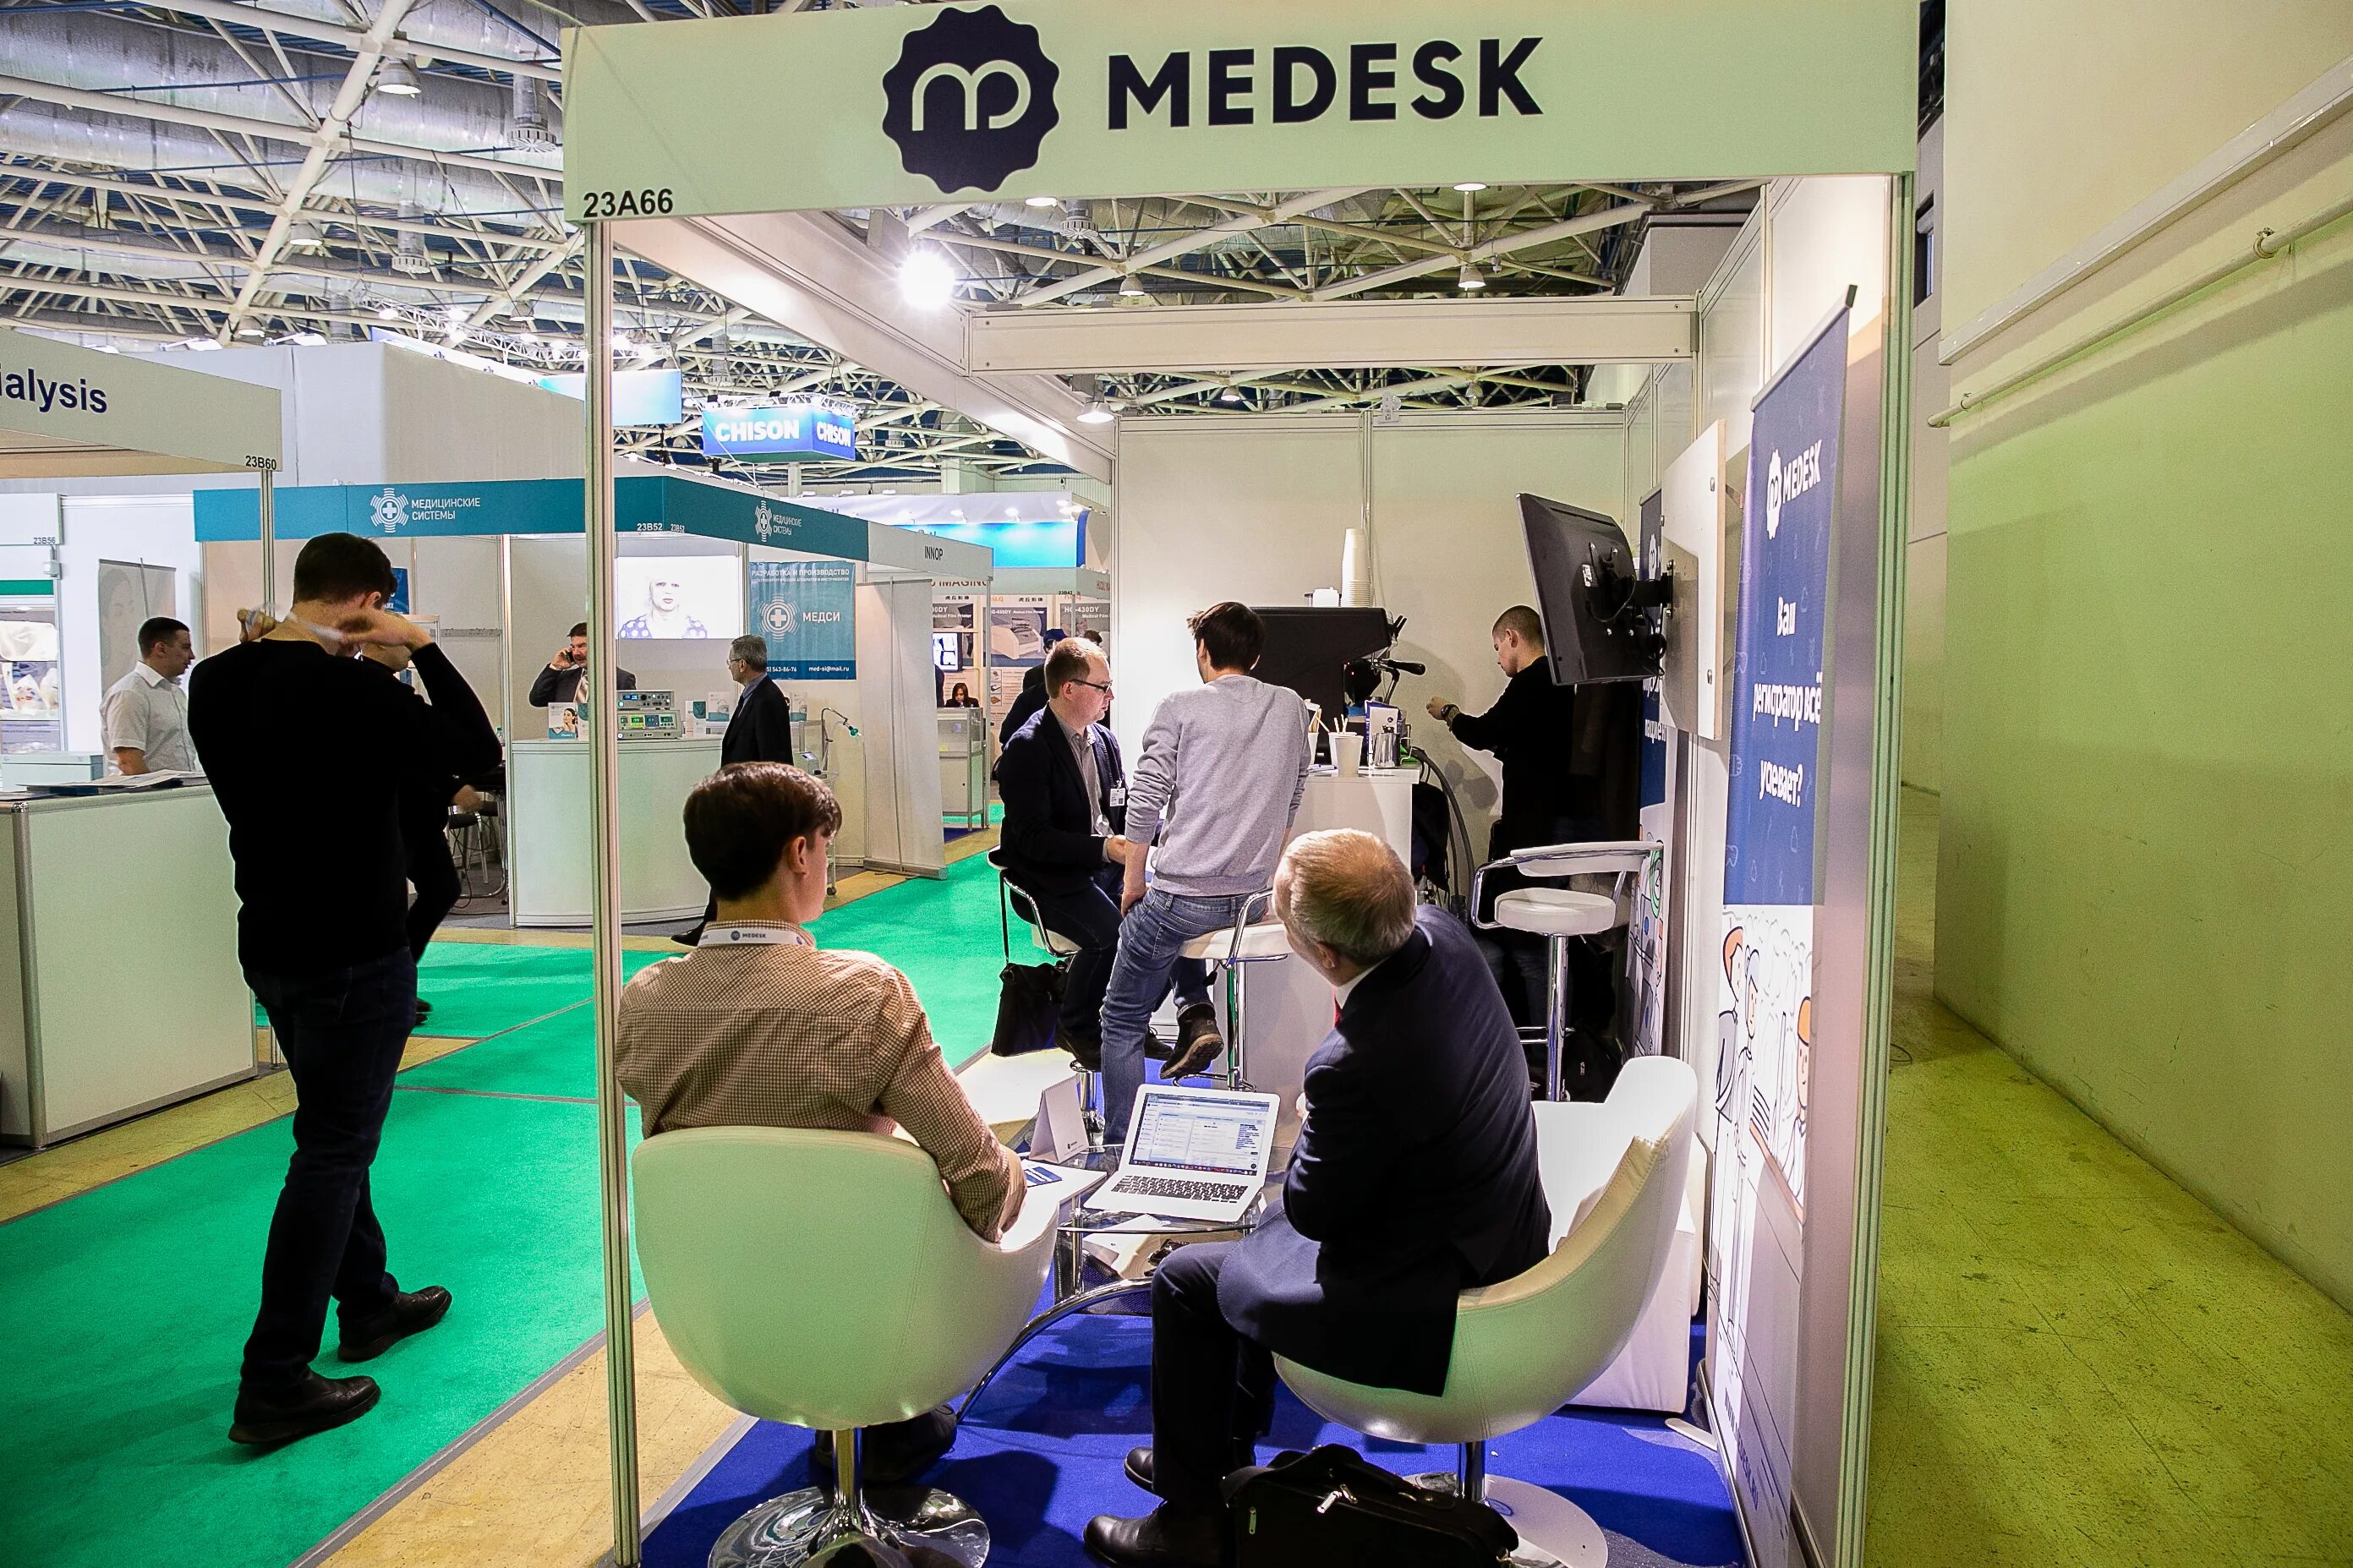 Медеск. Medesk производитель. Medesk – автоматизация регистратуры. Выставка здравоохранения 2022 Москва.